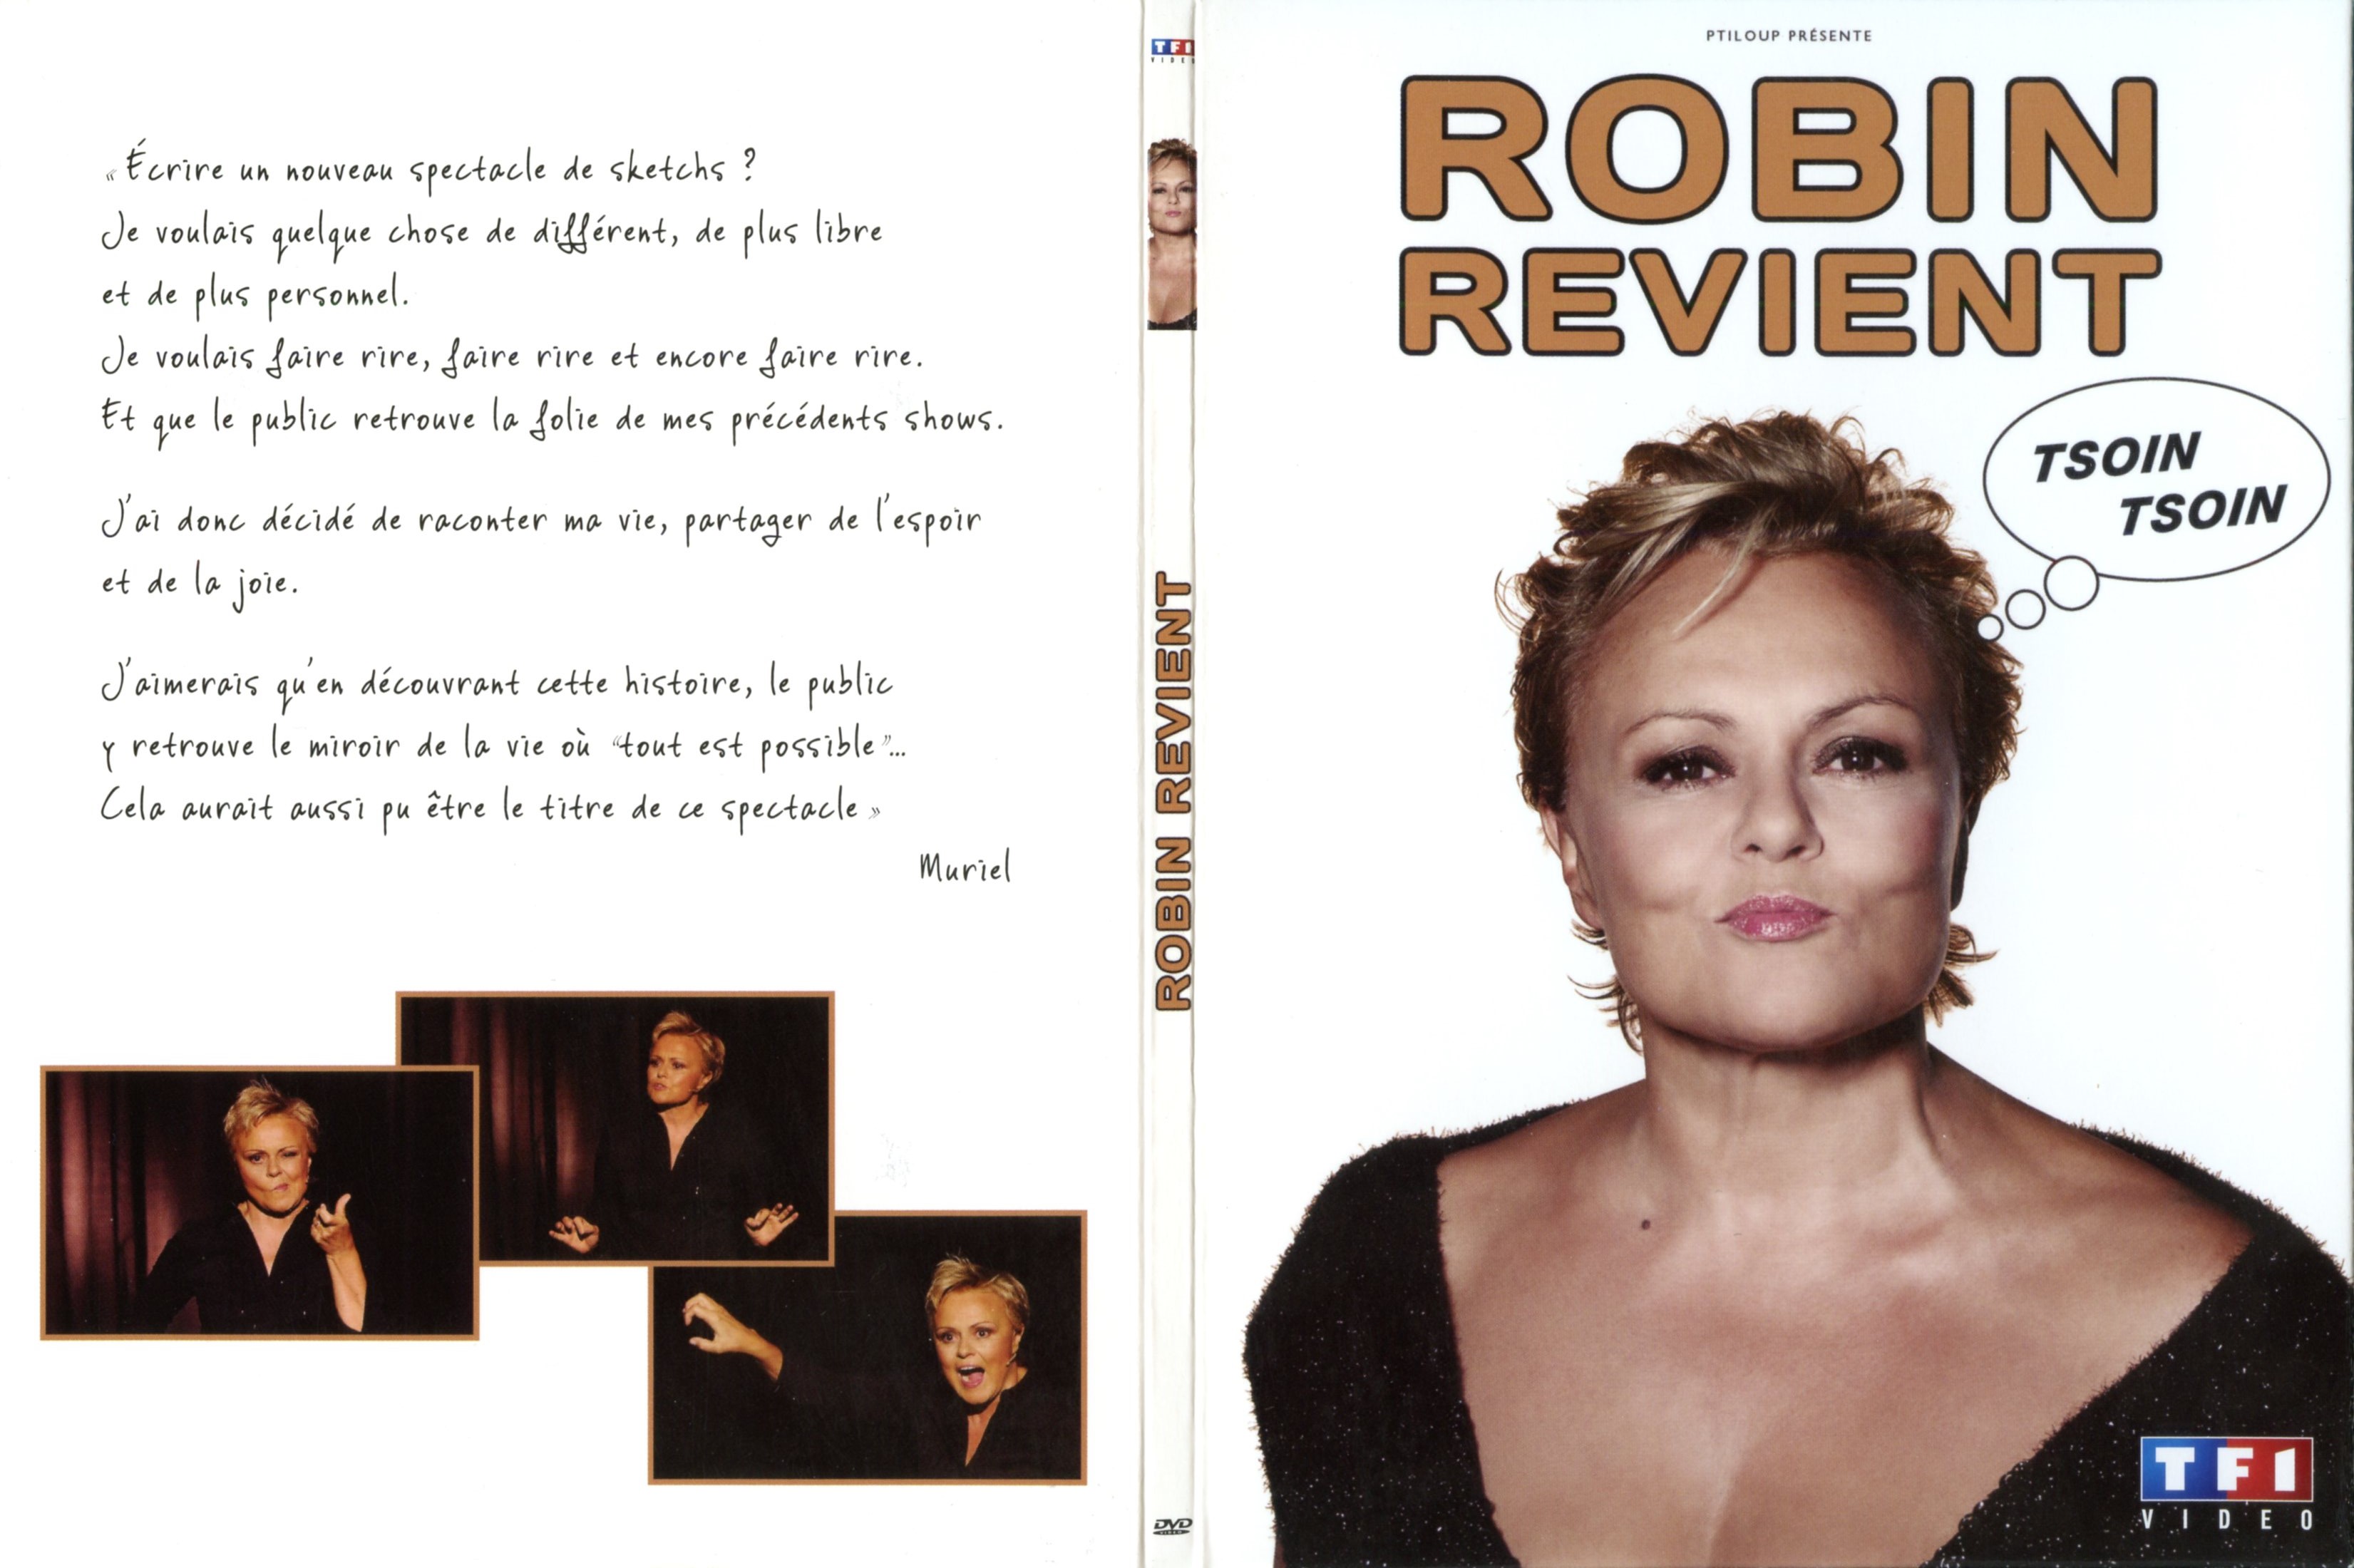 Jaquette DVD Muriel Robin revient tsoin tsoin v3